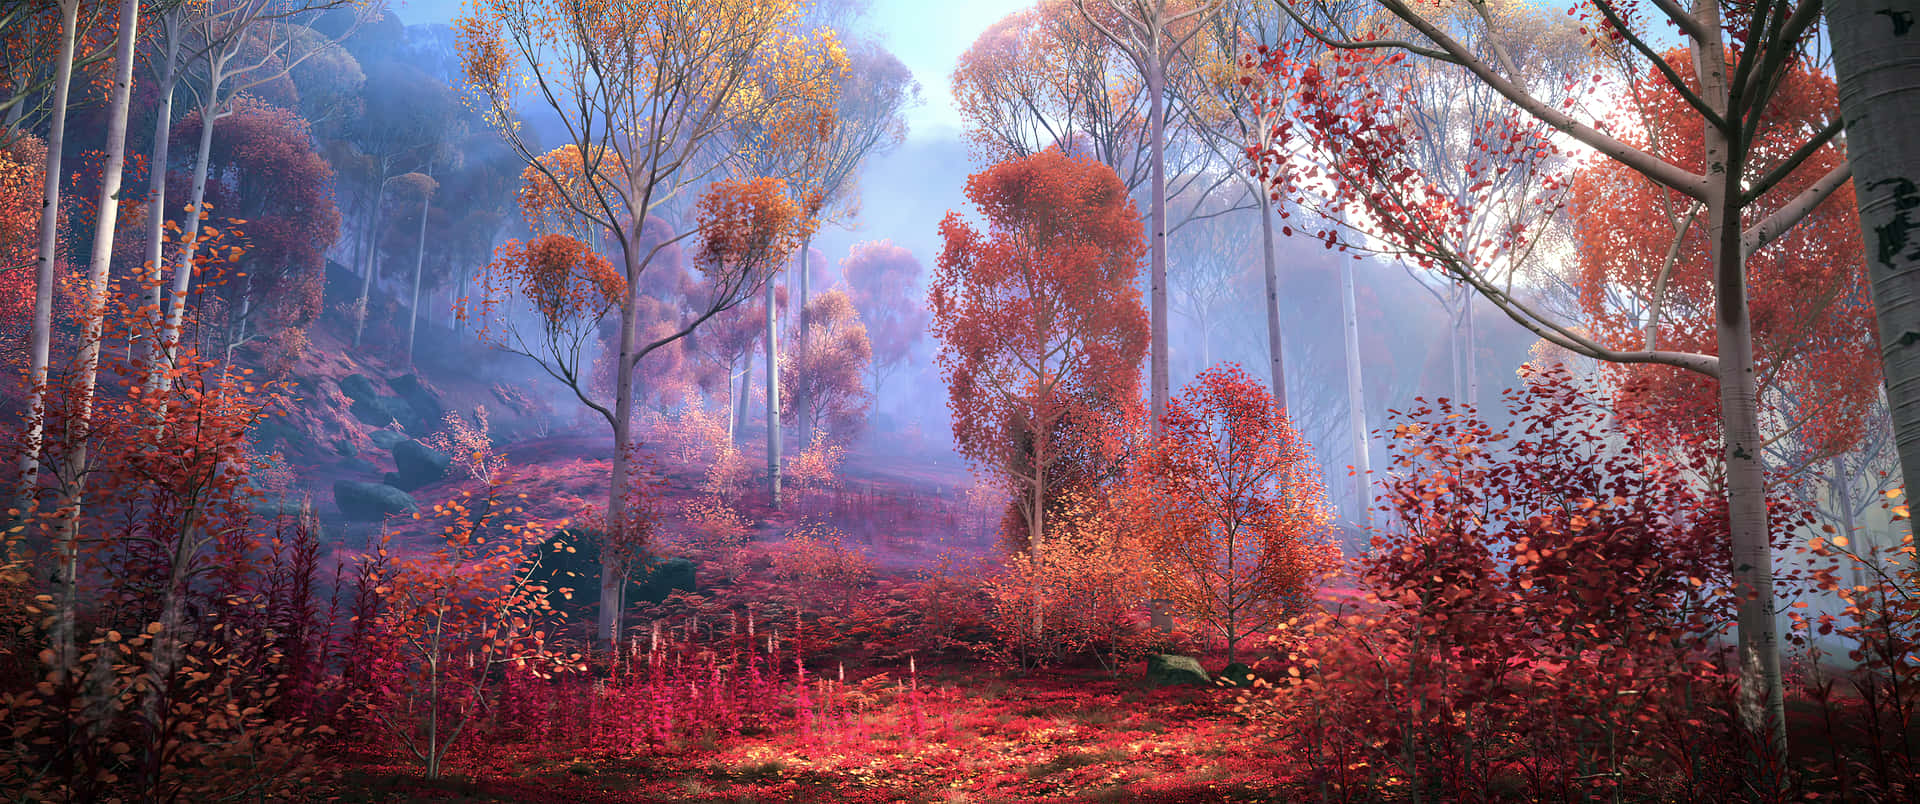 Magischer Wald Hintergrundbilder